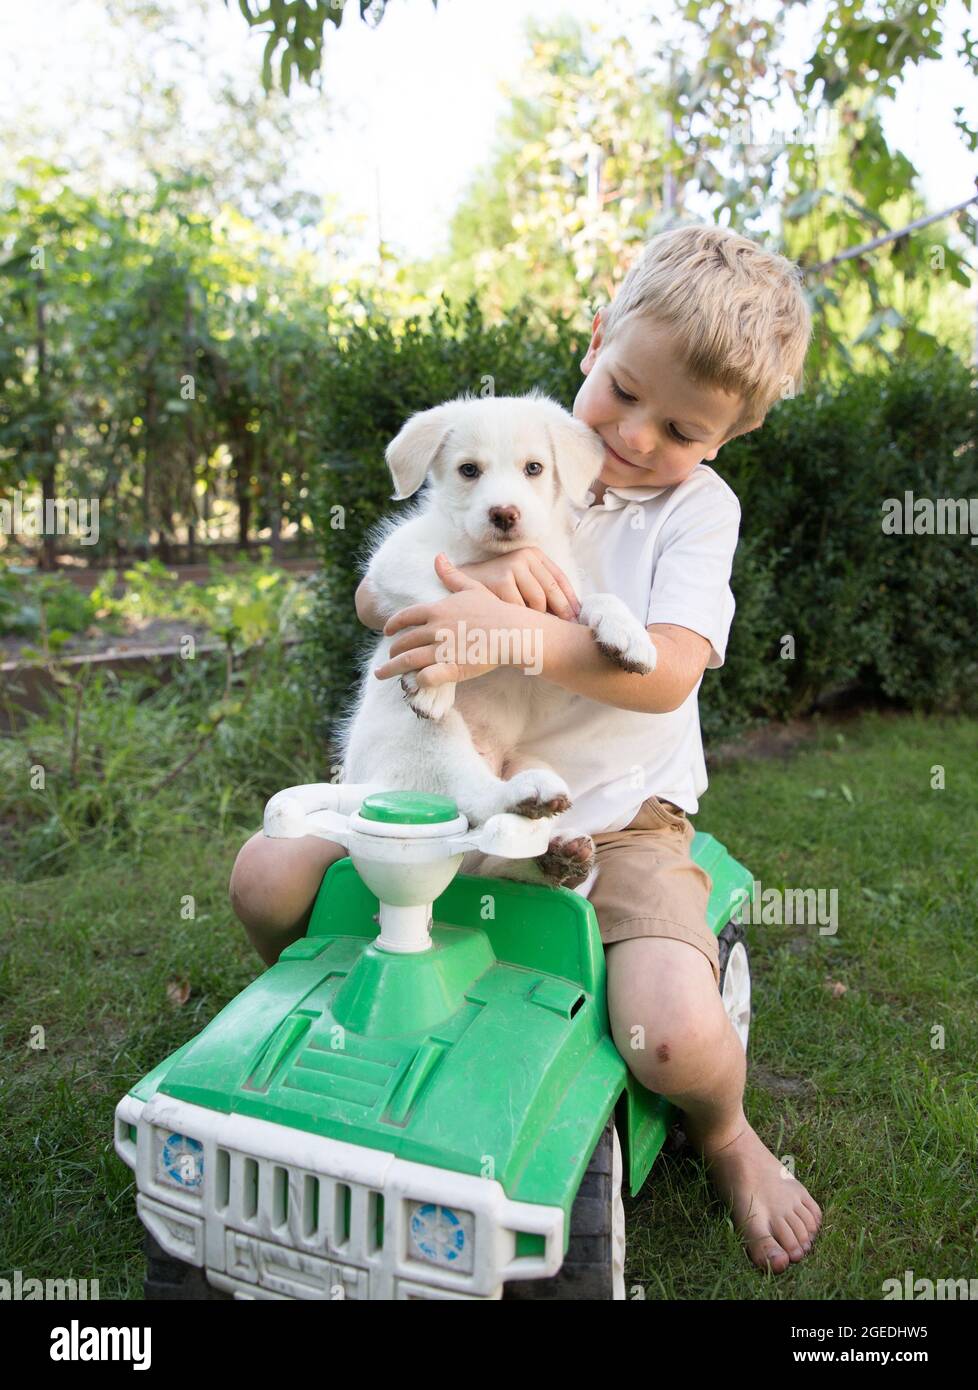 Netter Junge 4 Jahre alt mit einem weißen Welpen sitzen in einer Umarmung auf einem großen Kinderwagen. Kind und Hund sind Freunde. Glückliche Kindheit mit geliebten p Stockfoto